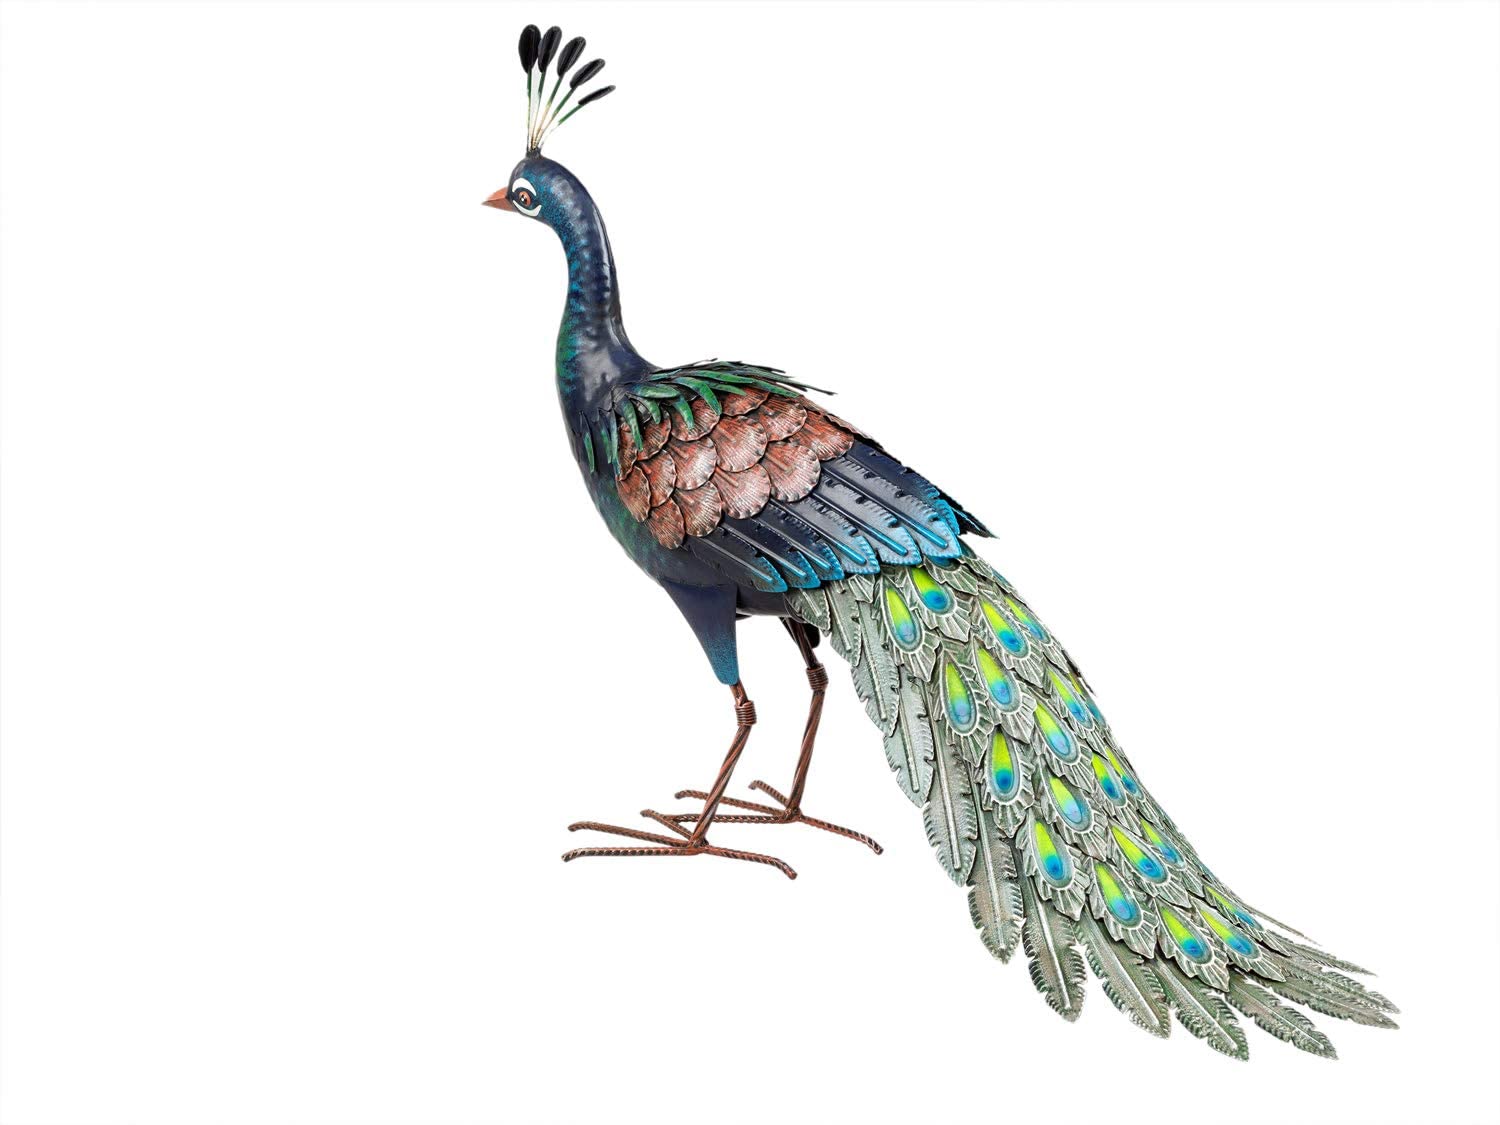 Pfau Tierfigur aus Metall,Standfigur,Dekofigur,50 cm,Peacock Animal Figur,Neu 